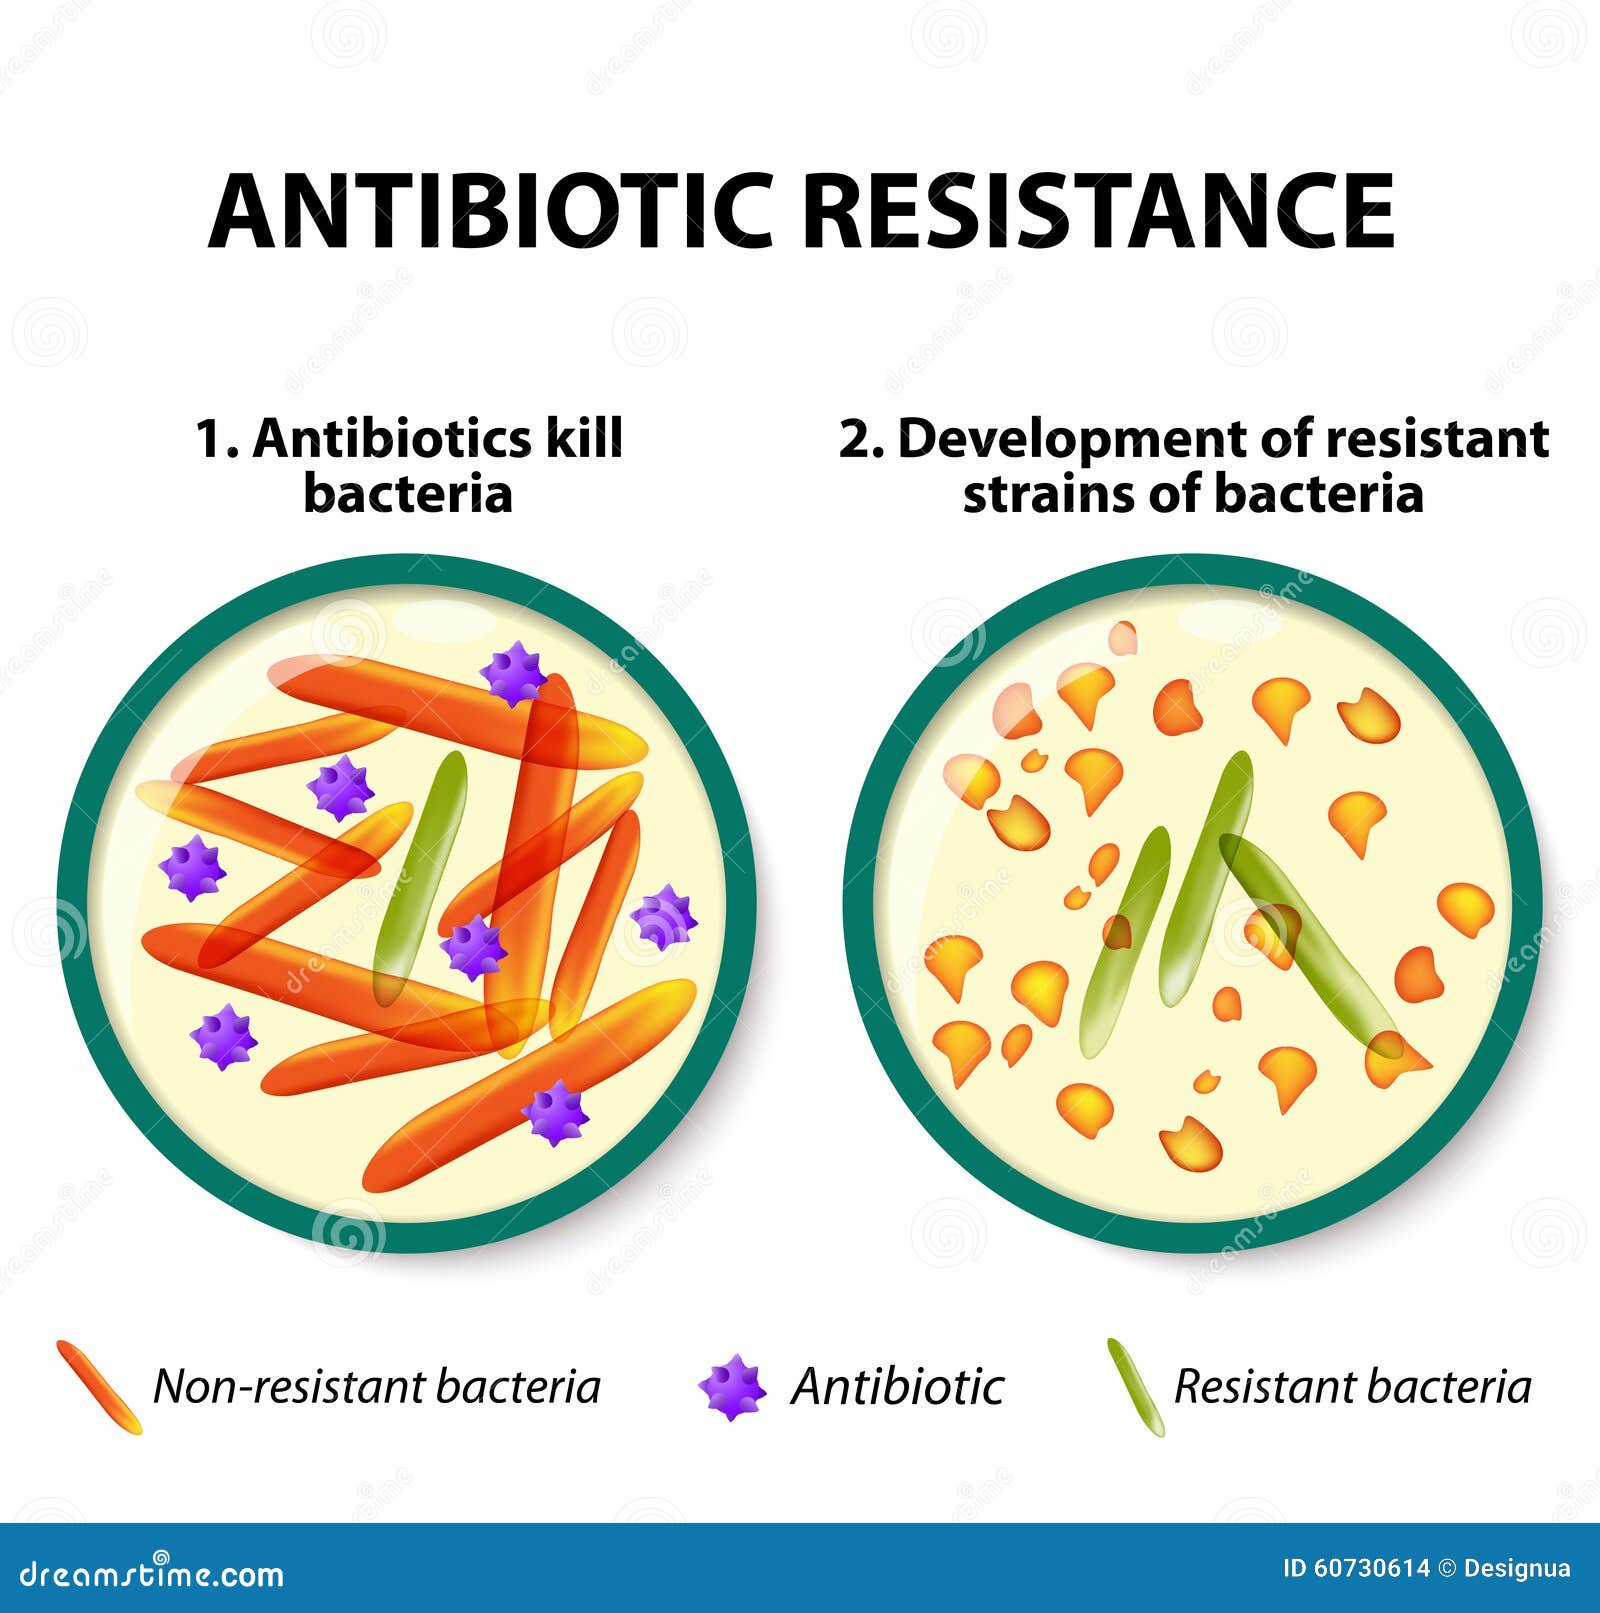 Even Non-Antibiotic Drugs Can Promote Antibiotic 